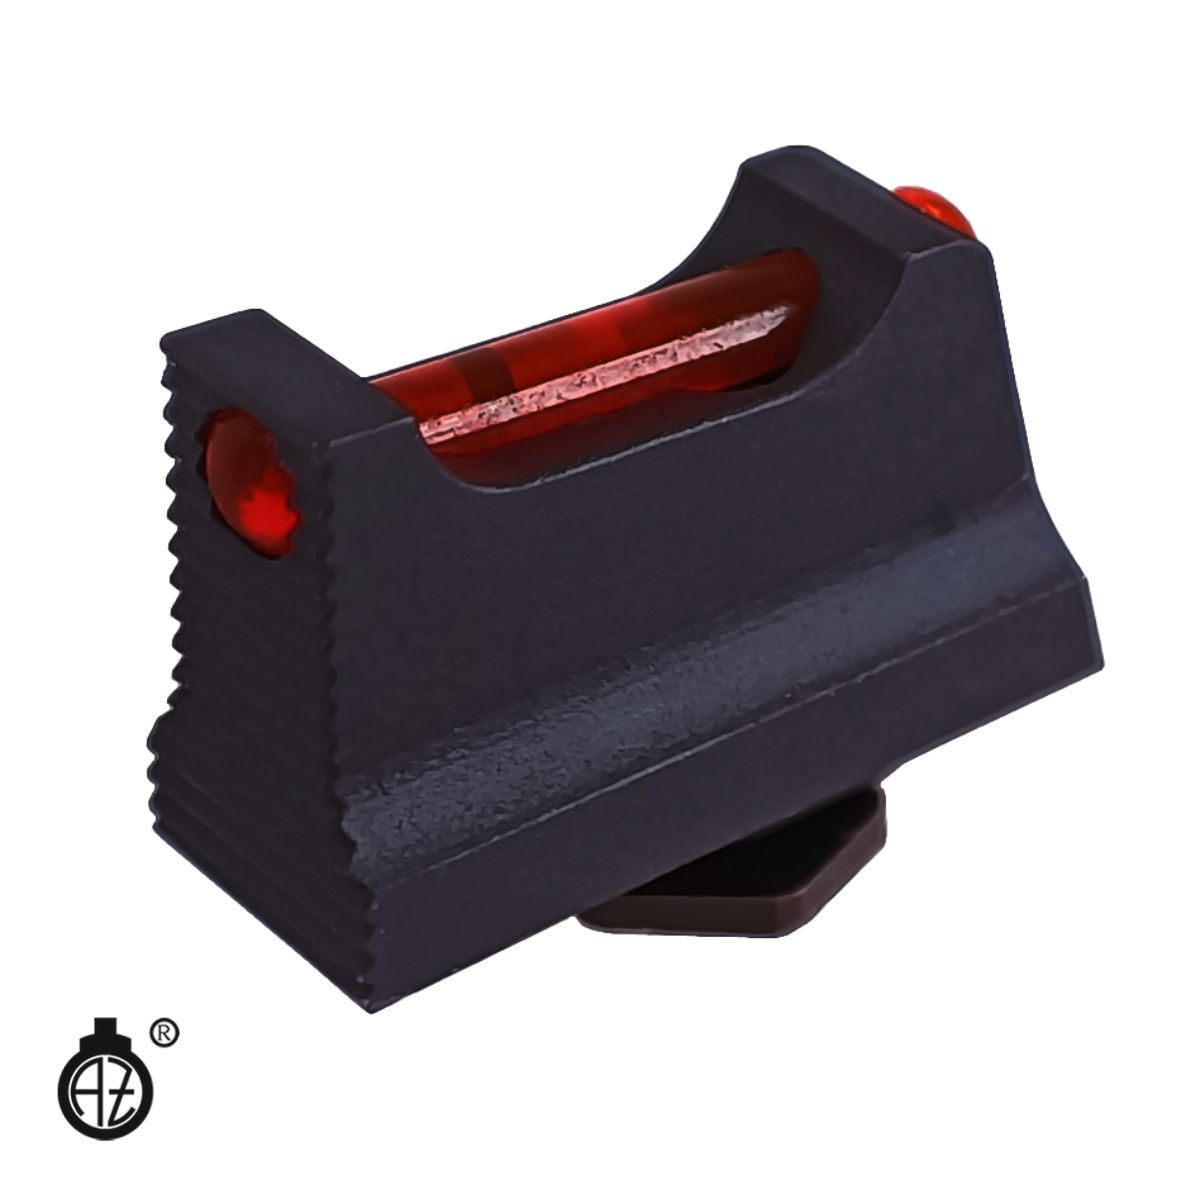 Ocelová mířidla Zendl pro pistole Walther PDP, muška světlovod. červená 1,5mm, hledí černé